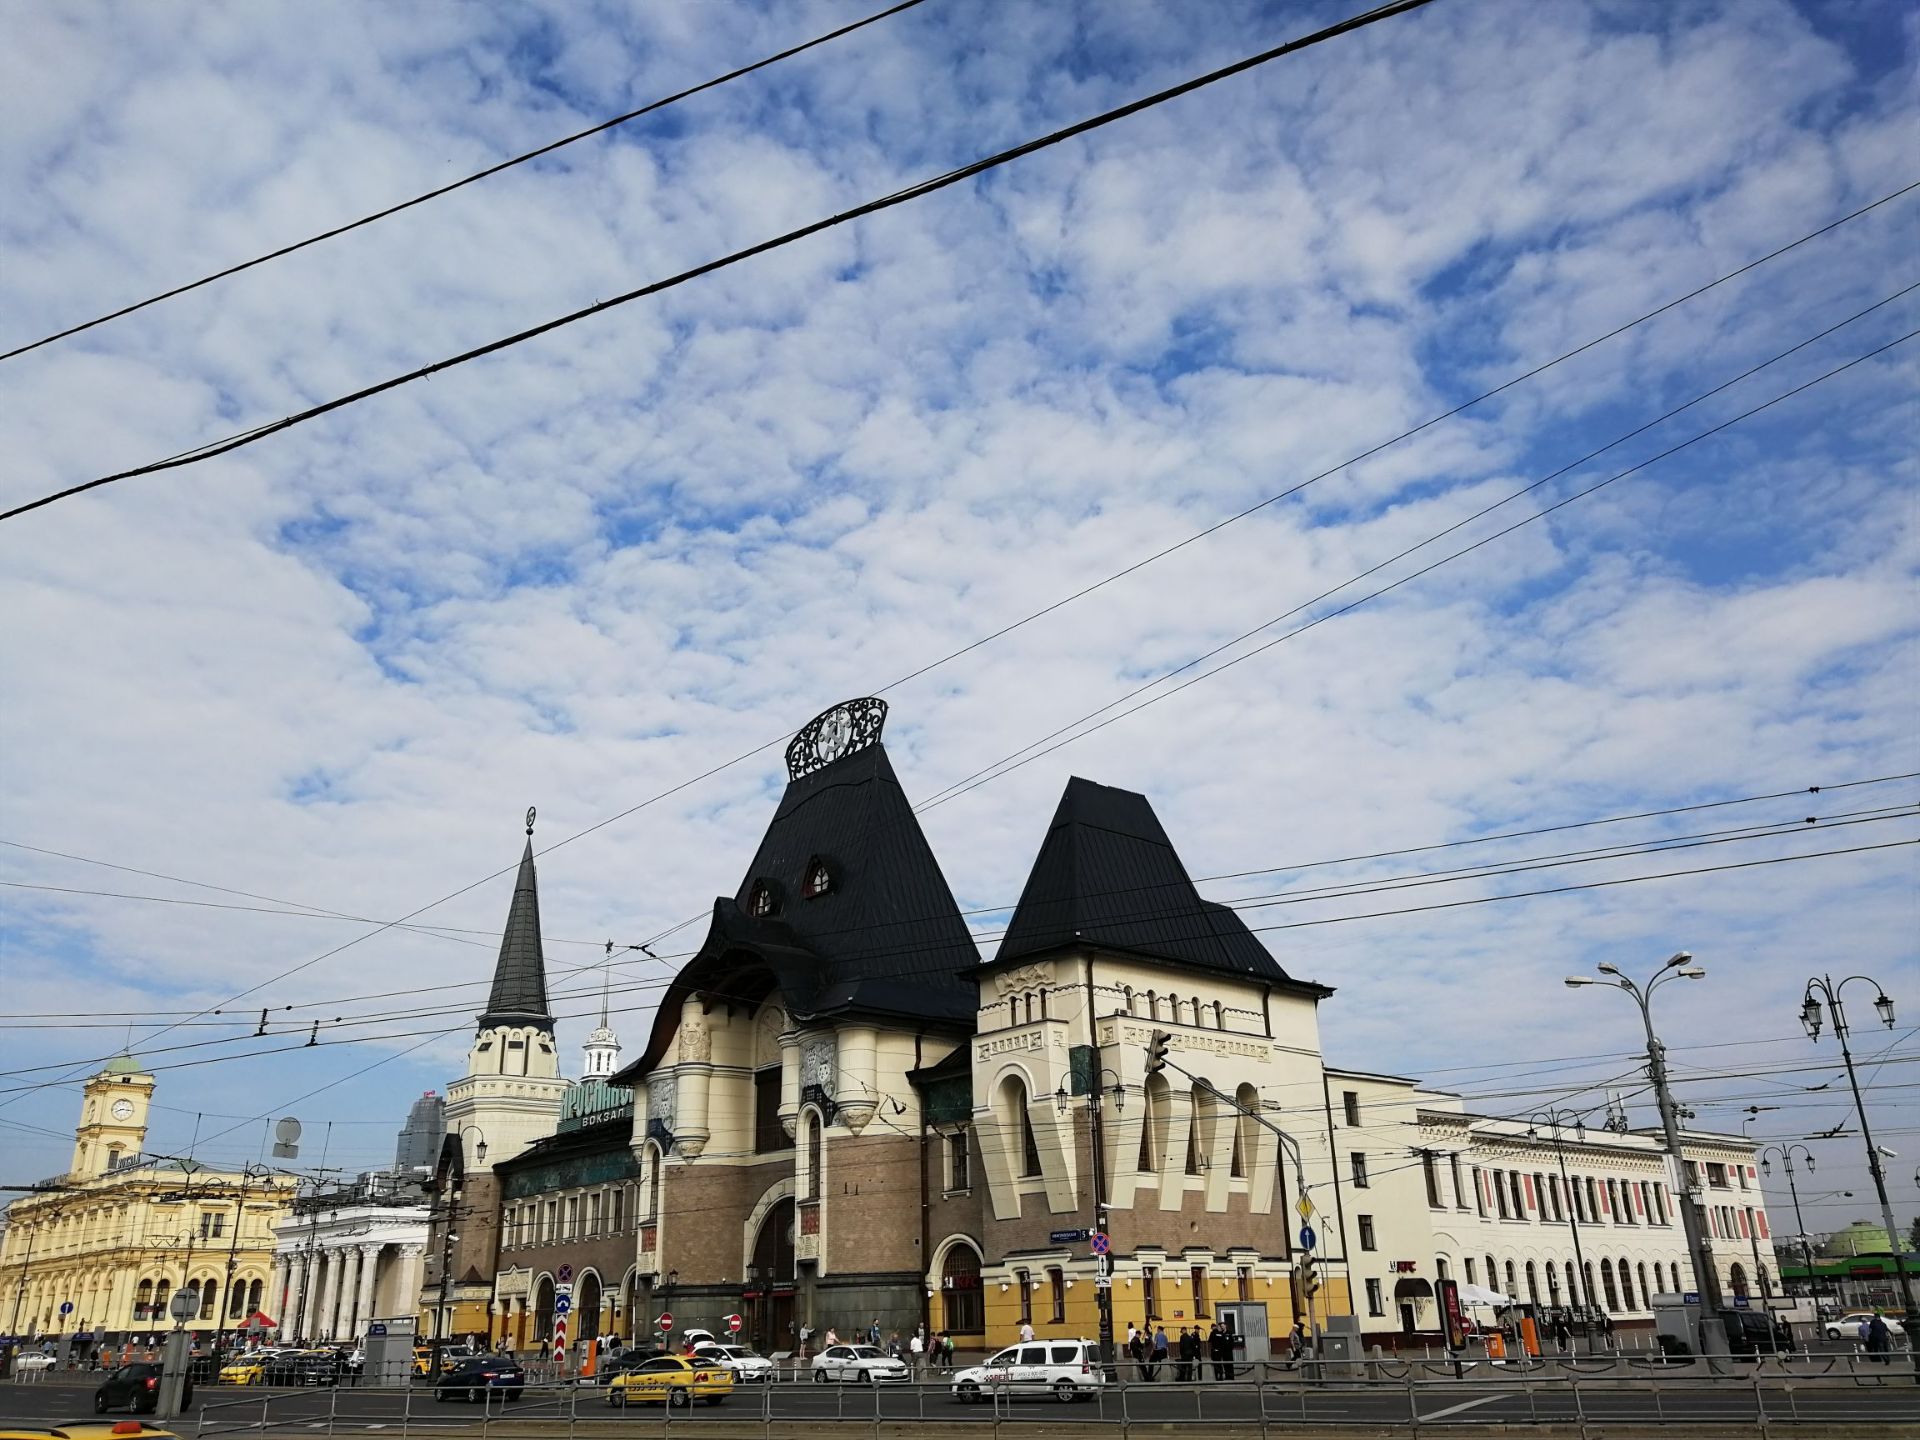 该站建于19世纪60年代，距今150年的历史，被认为是莫斯科最美丽的火车站。该站的火车主要通往雅罗斯